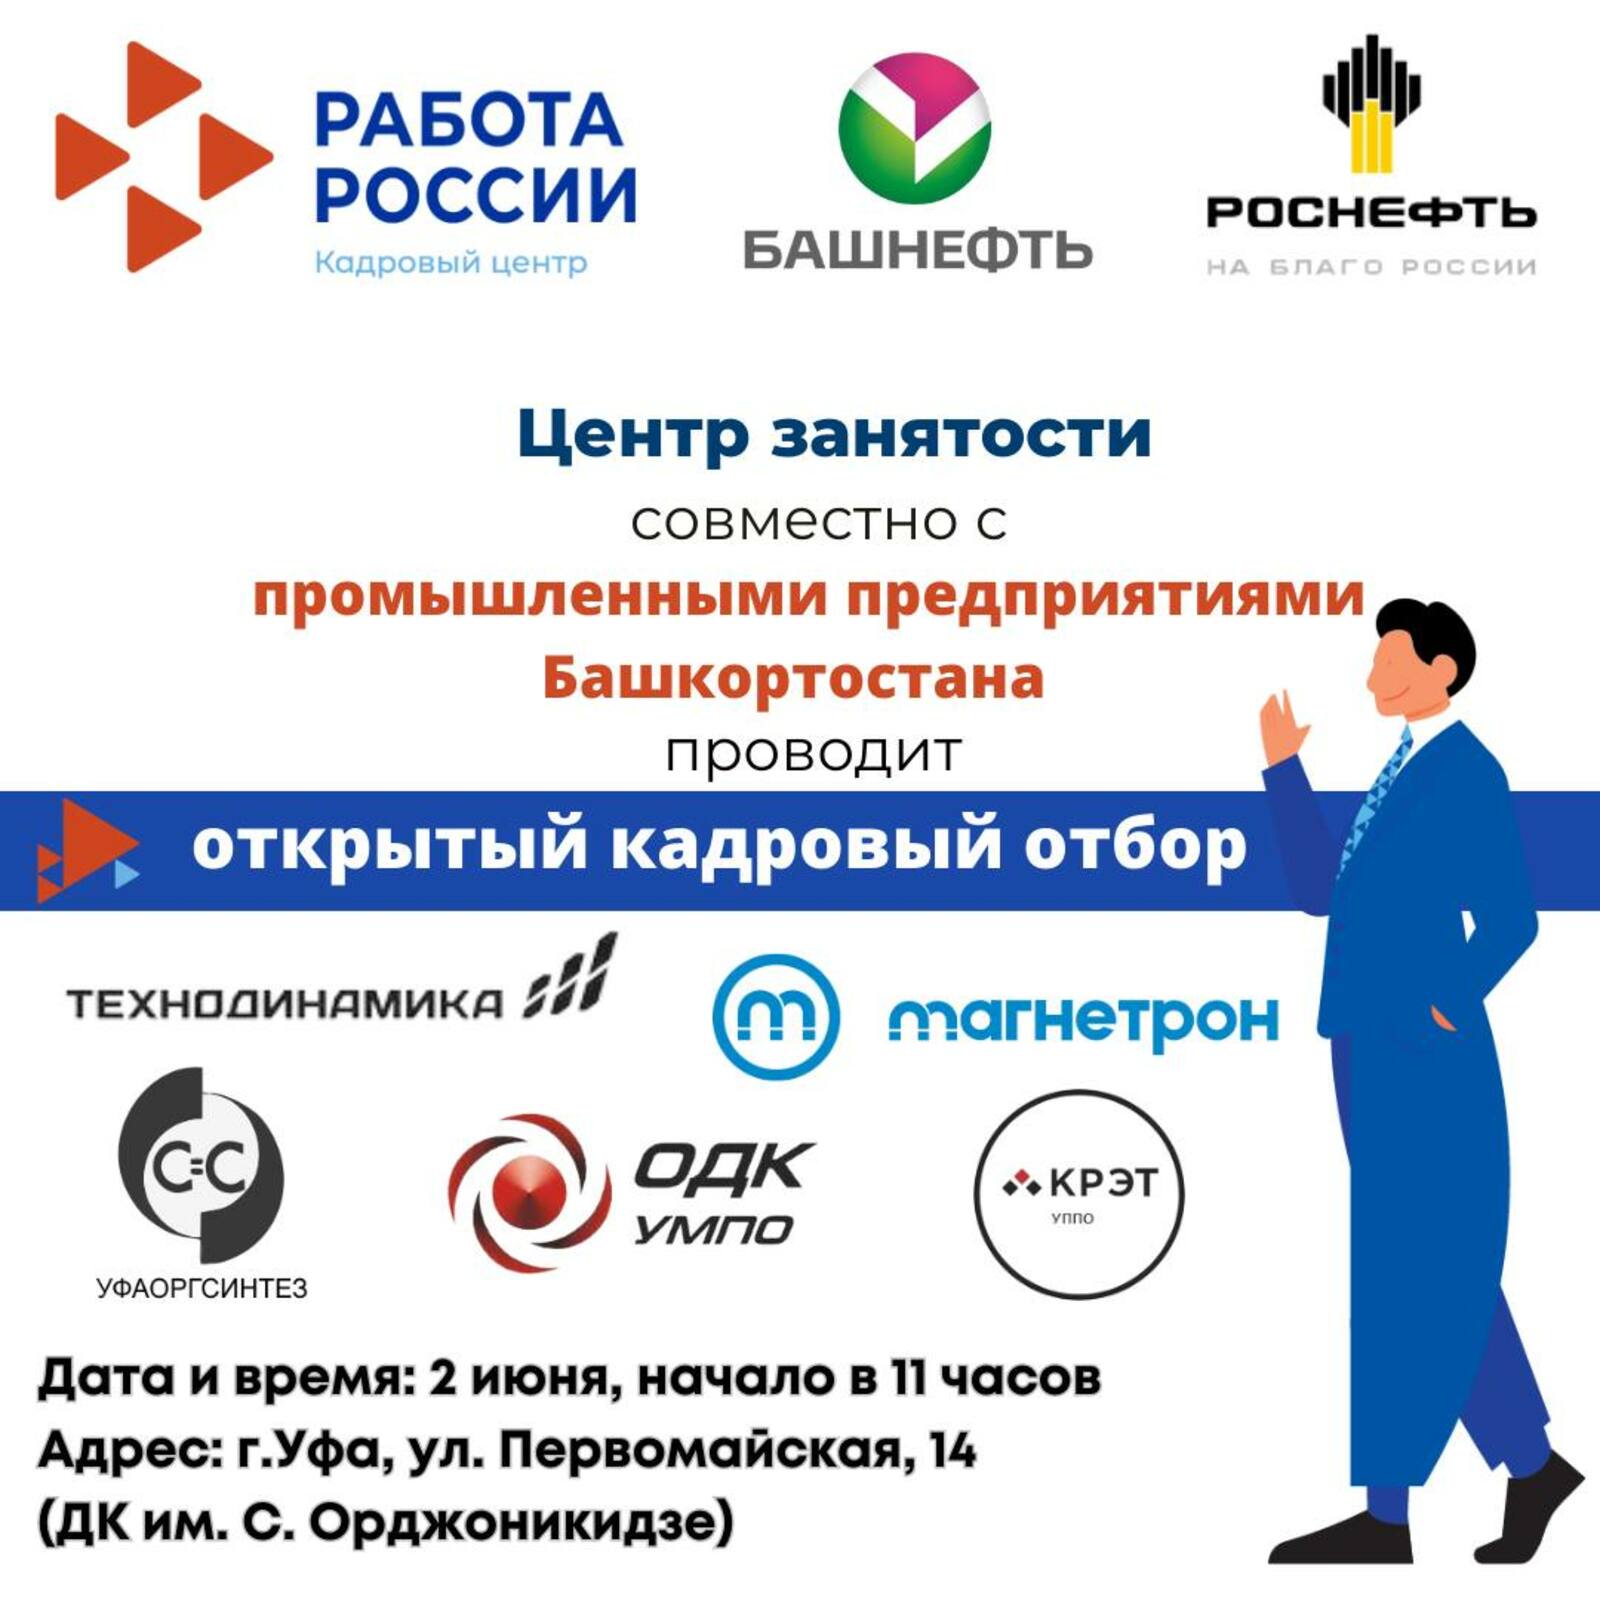 Крупные промышленные предприятия Башкортостана набирают сотрудников